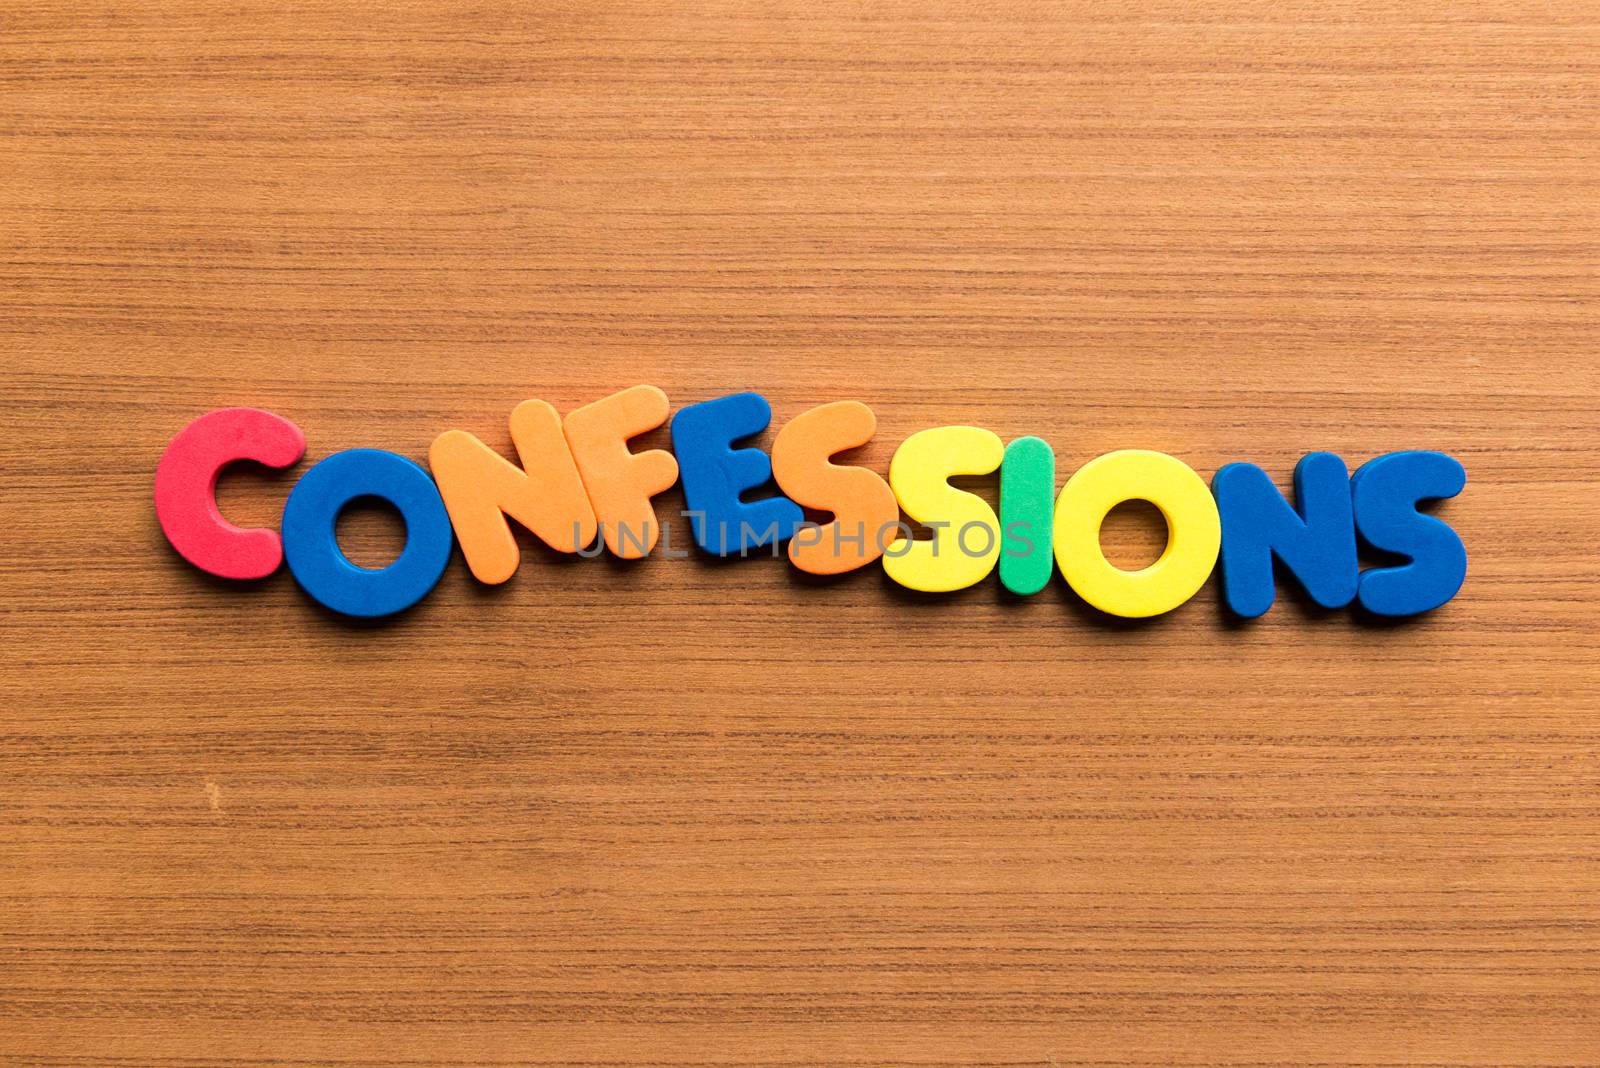 confessions colorful word by sohel.parvez@hotmail.com